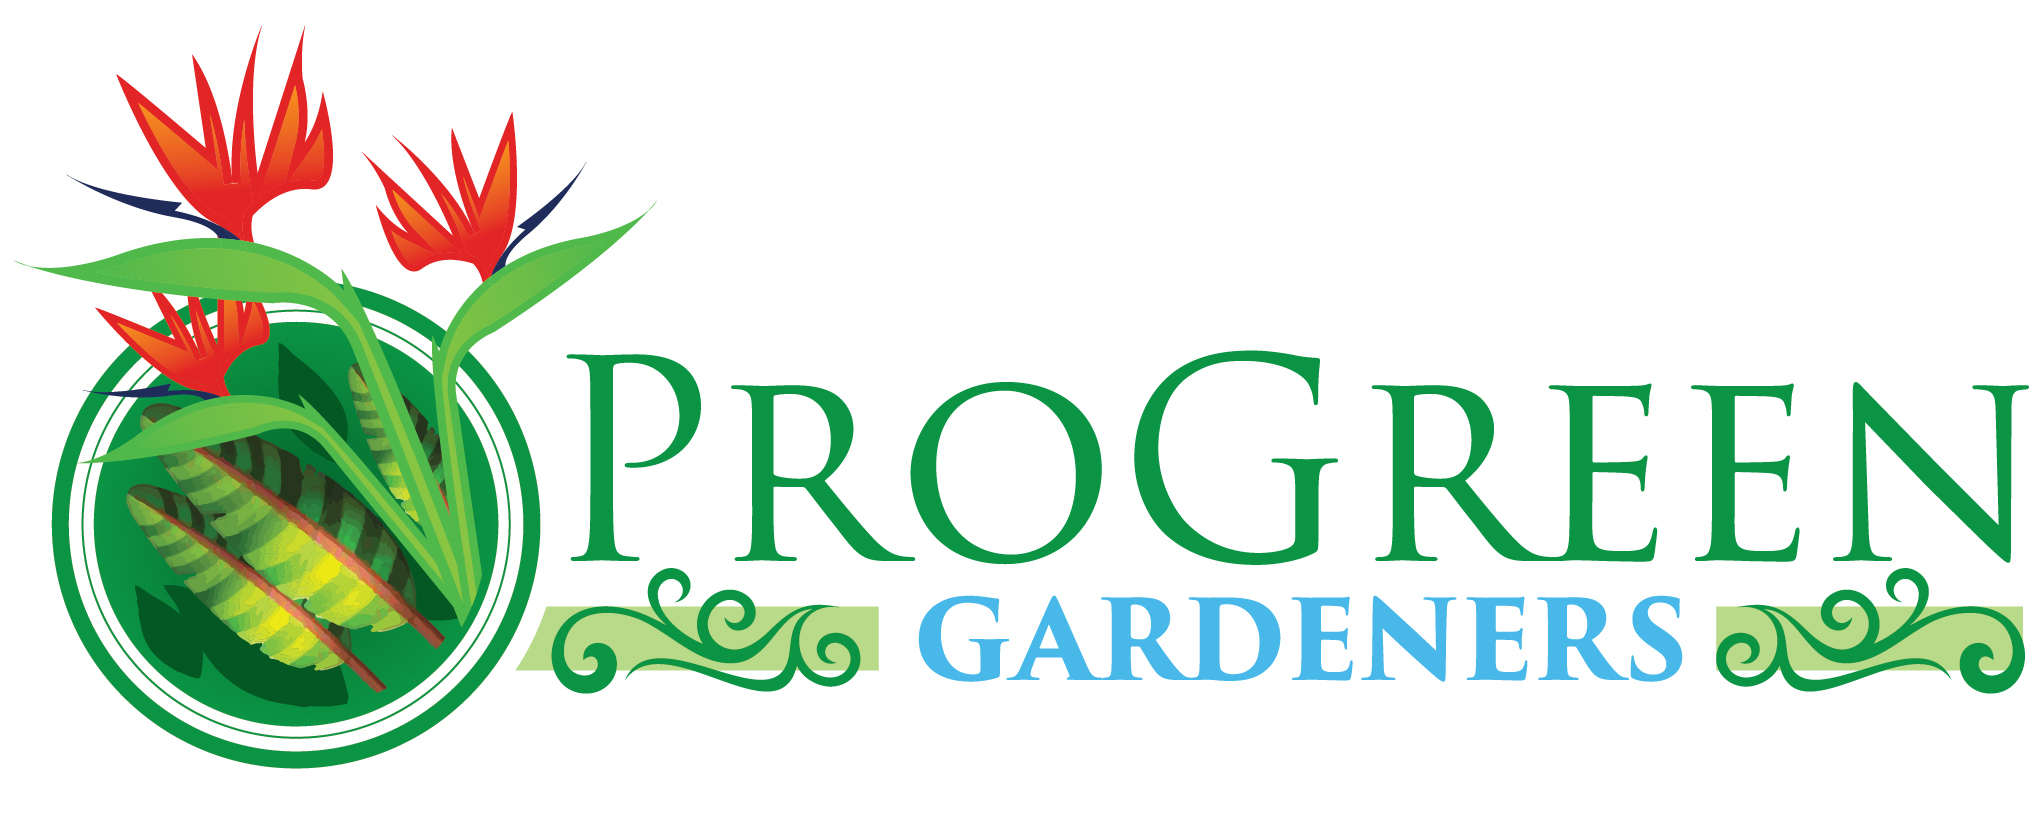 ProGreenGardeners - Unlicensed Contractor Logo